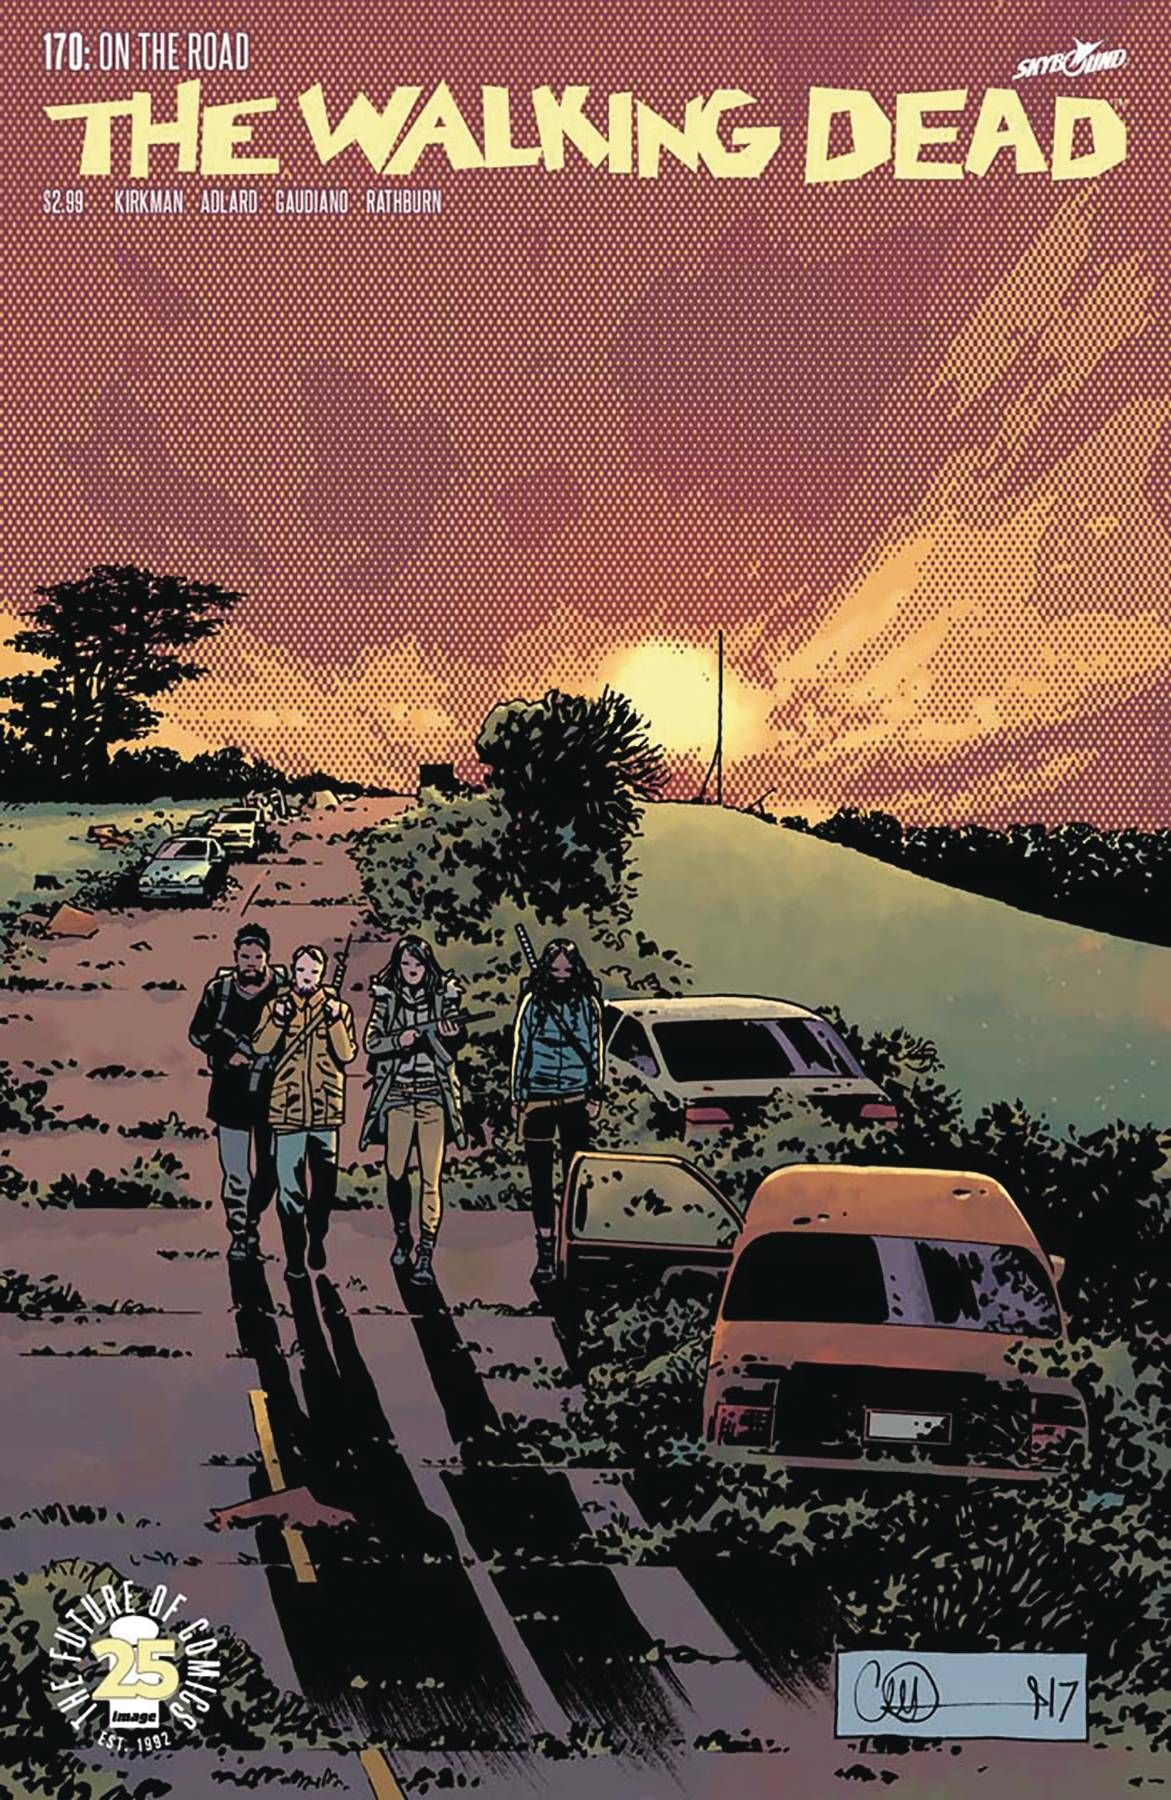 Walking Dead #170 Comic